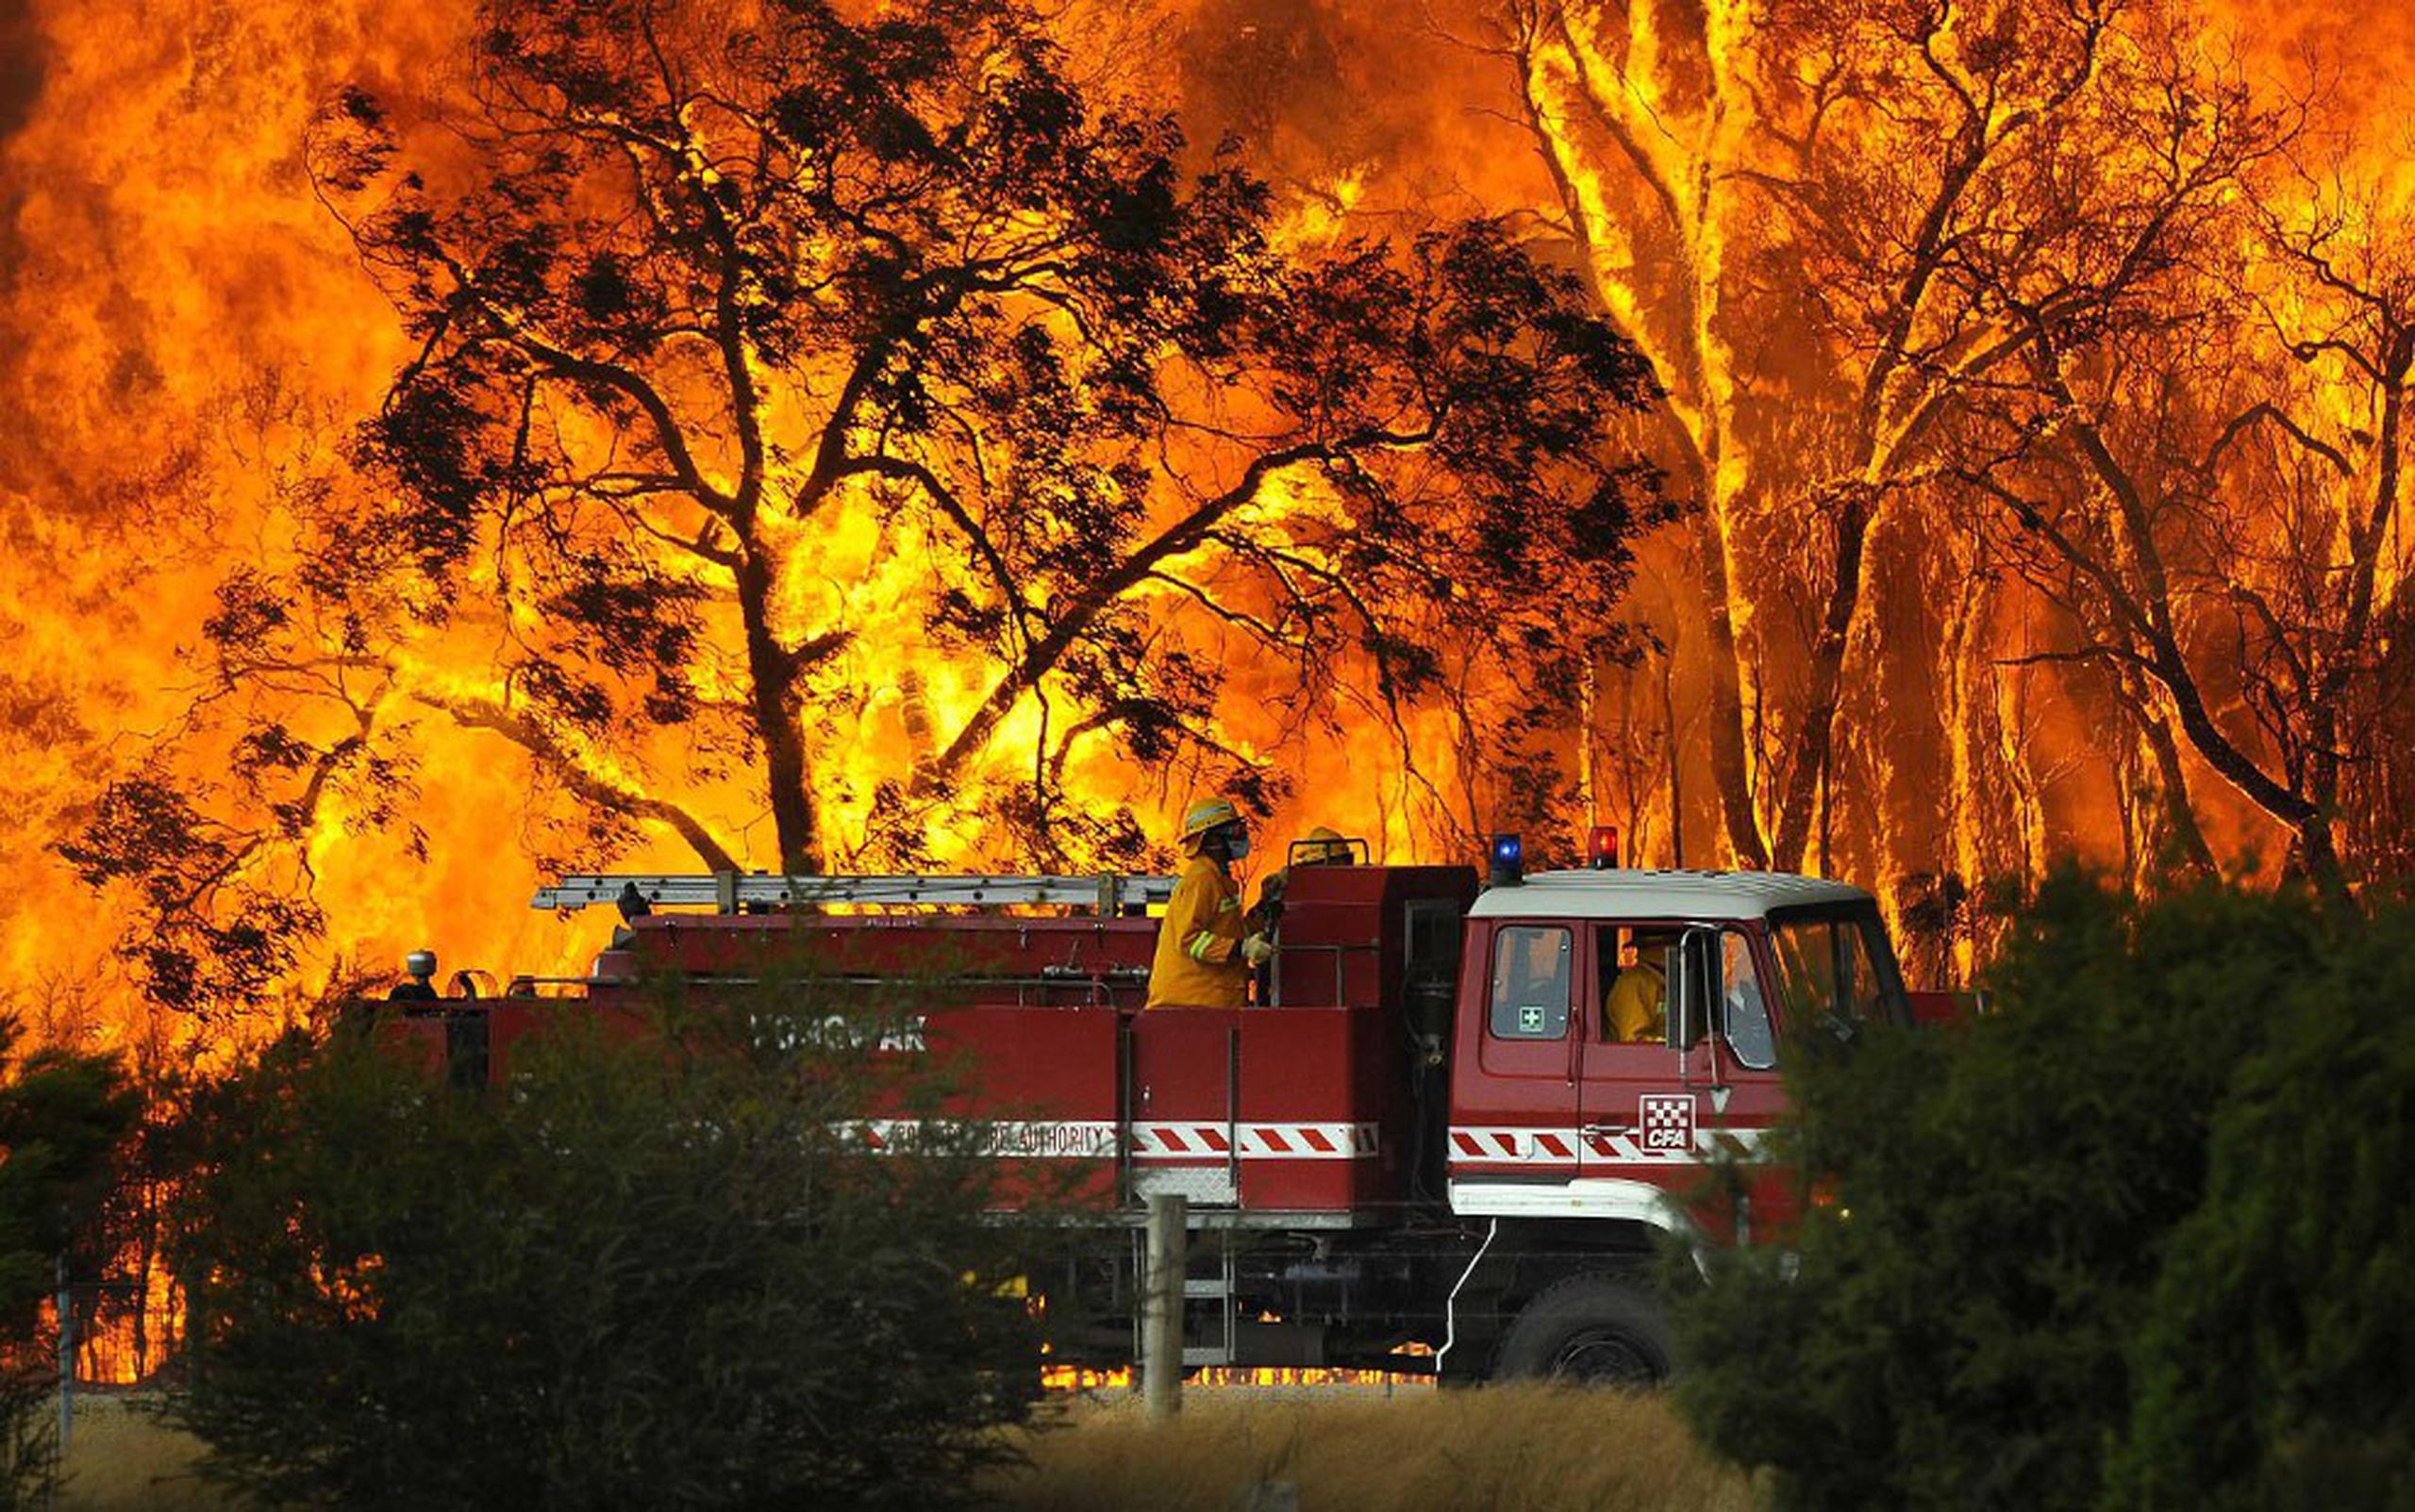 Los peores incendios registrados en Australia sucedieron en febrero de 2009, causaron 173 muertes y calcinaron 2,000 casas. (AP)